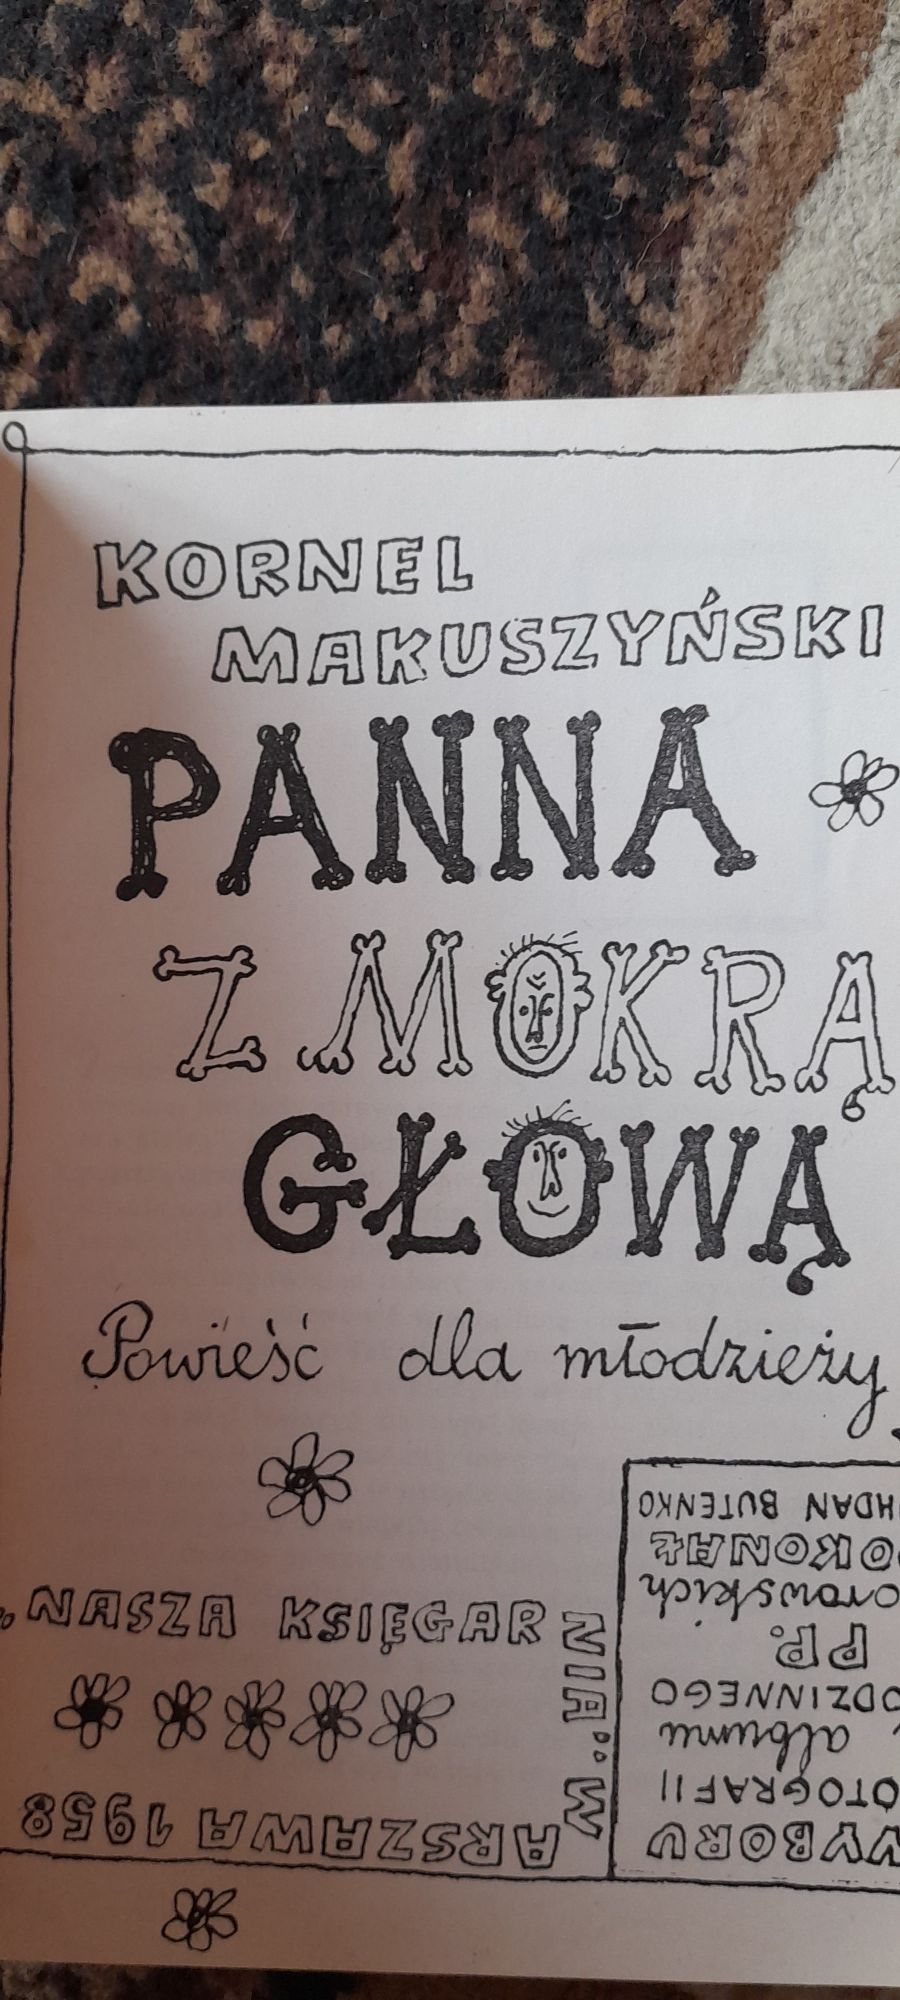 Panna z mokrą głową - Kornel Makuszyński 1958 wyd III